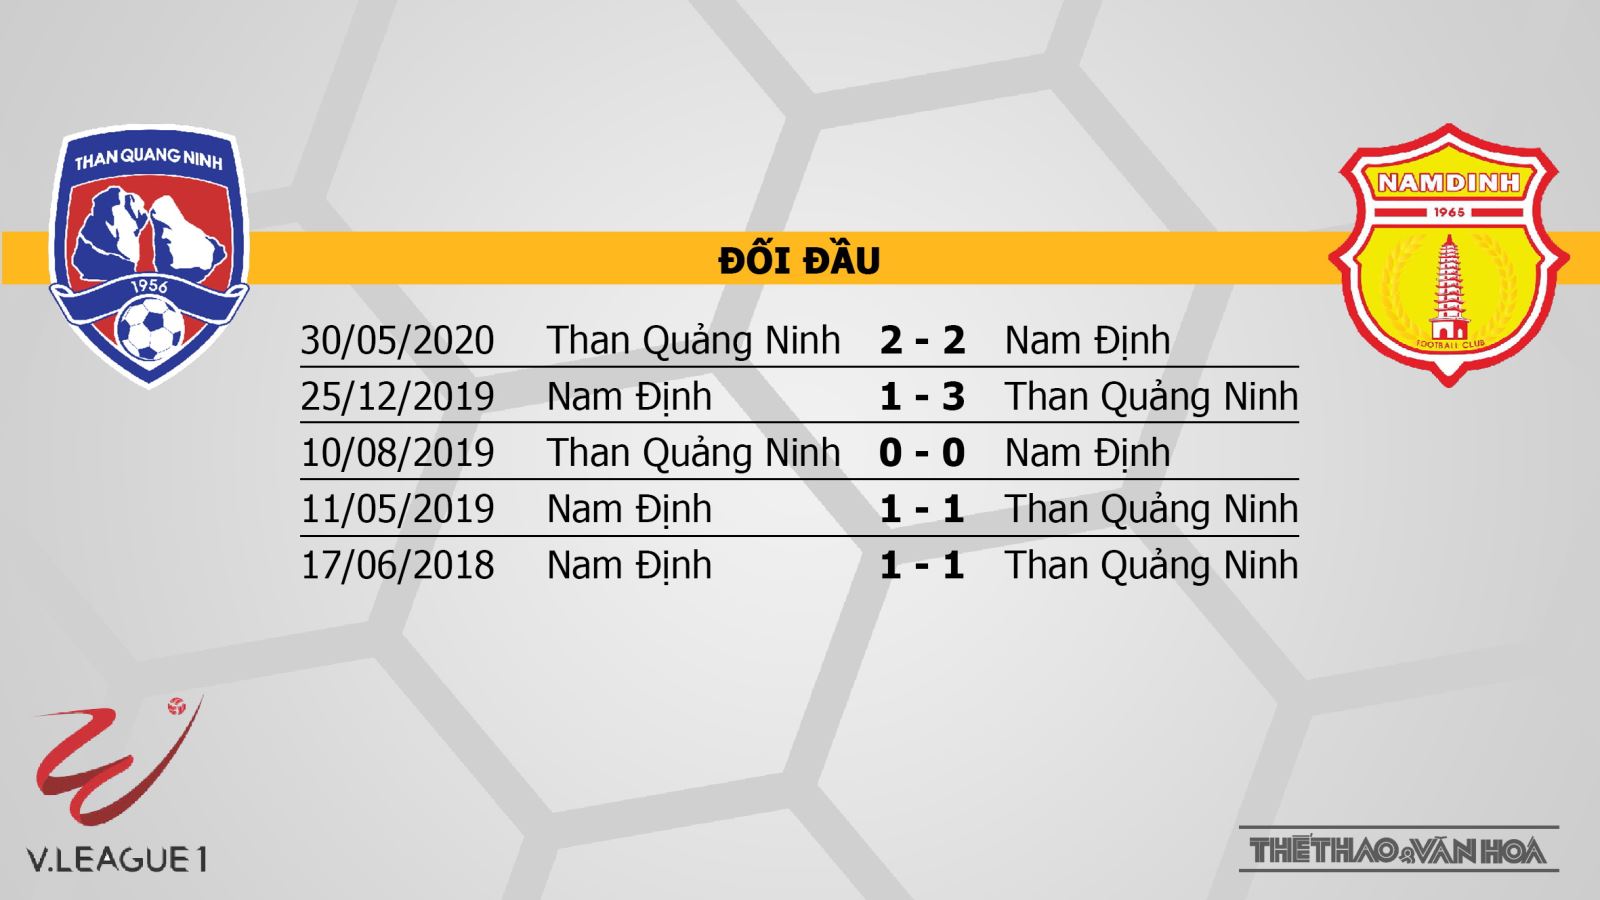 Than Quảng Ninh vs DNH Nam Định, bóng đá, trực tiếp bóng đá, Nam Định, lịch thi đấu bóng đá hôm nay, nhận định bóng đá, kèo bóng đá, V-League